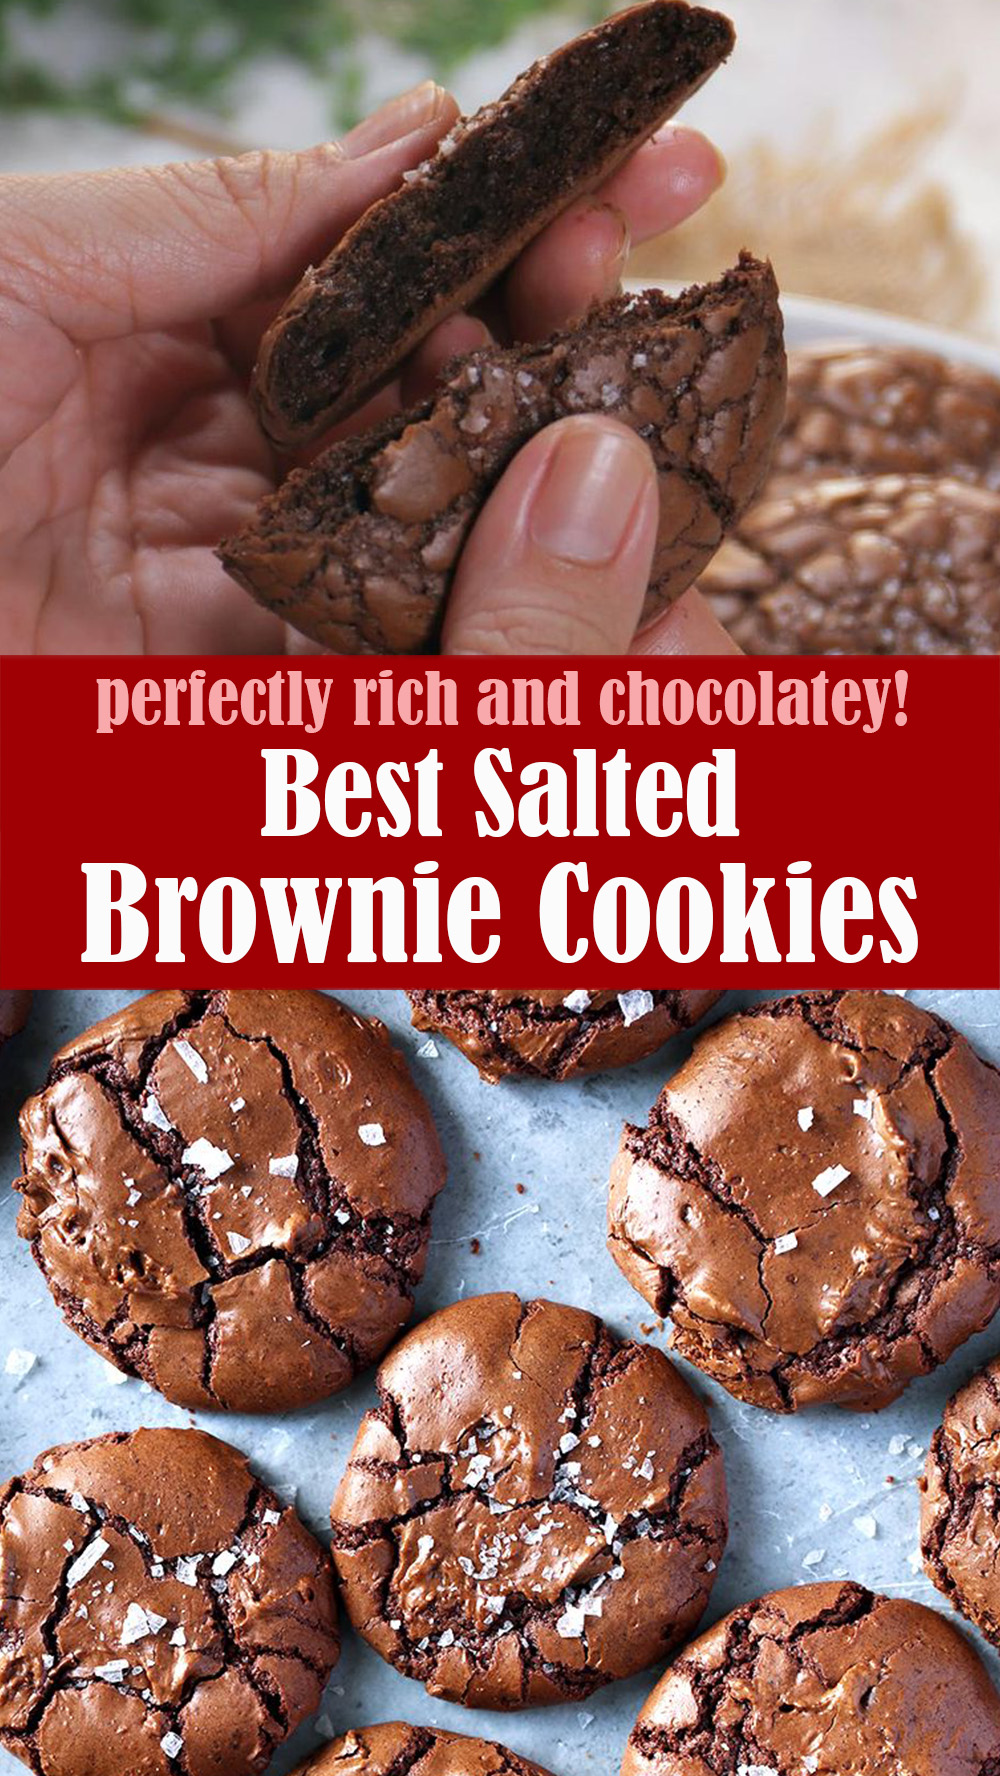 Best Salted Brownie Cookies